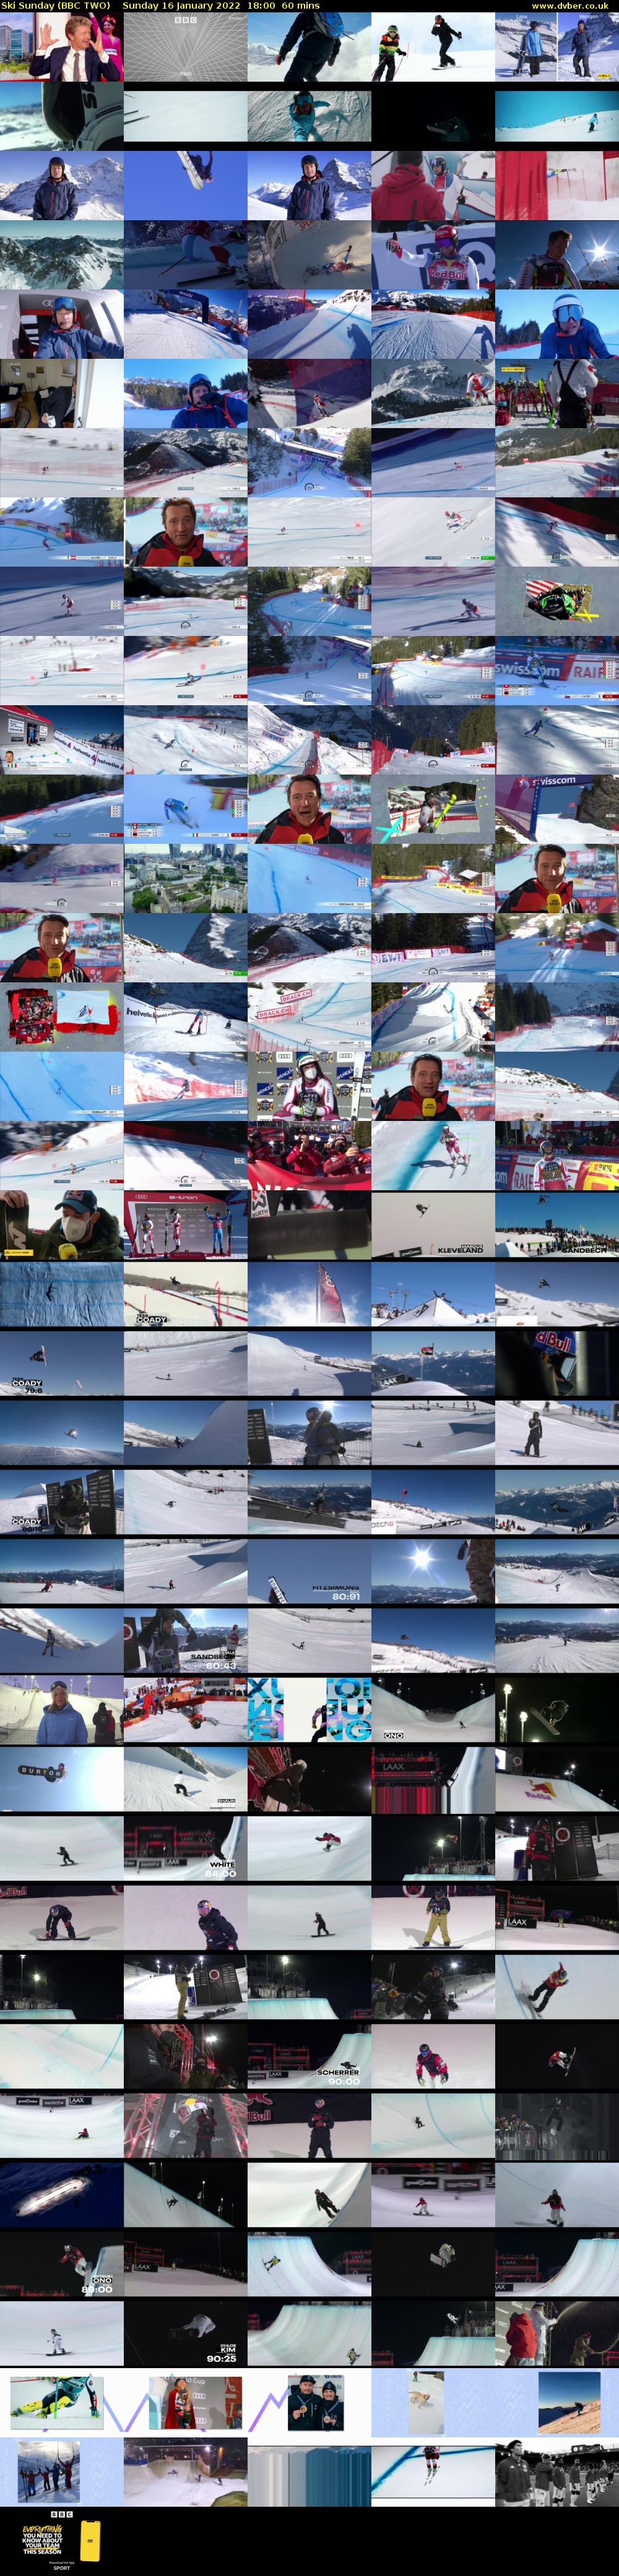 Ski Sunday (BBC TWO) Sunday 16 January 2022 18:00 - 19:00